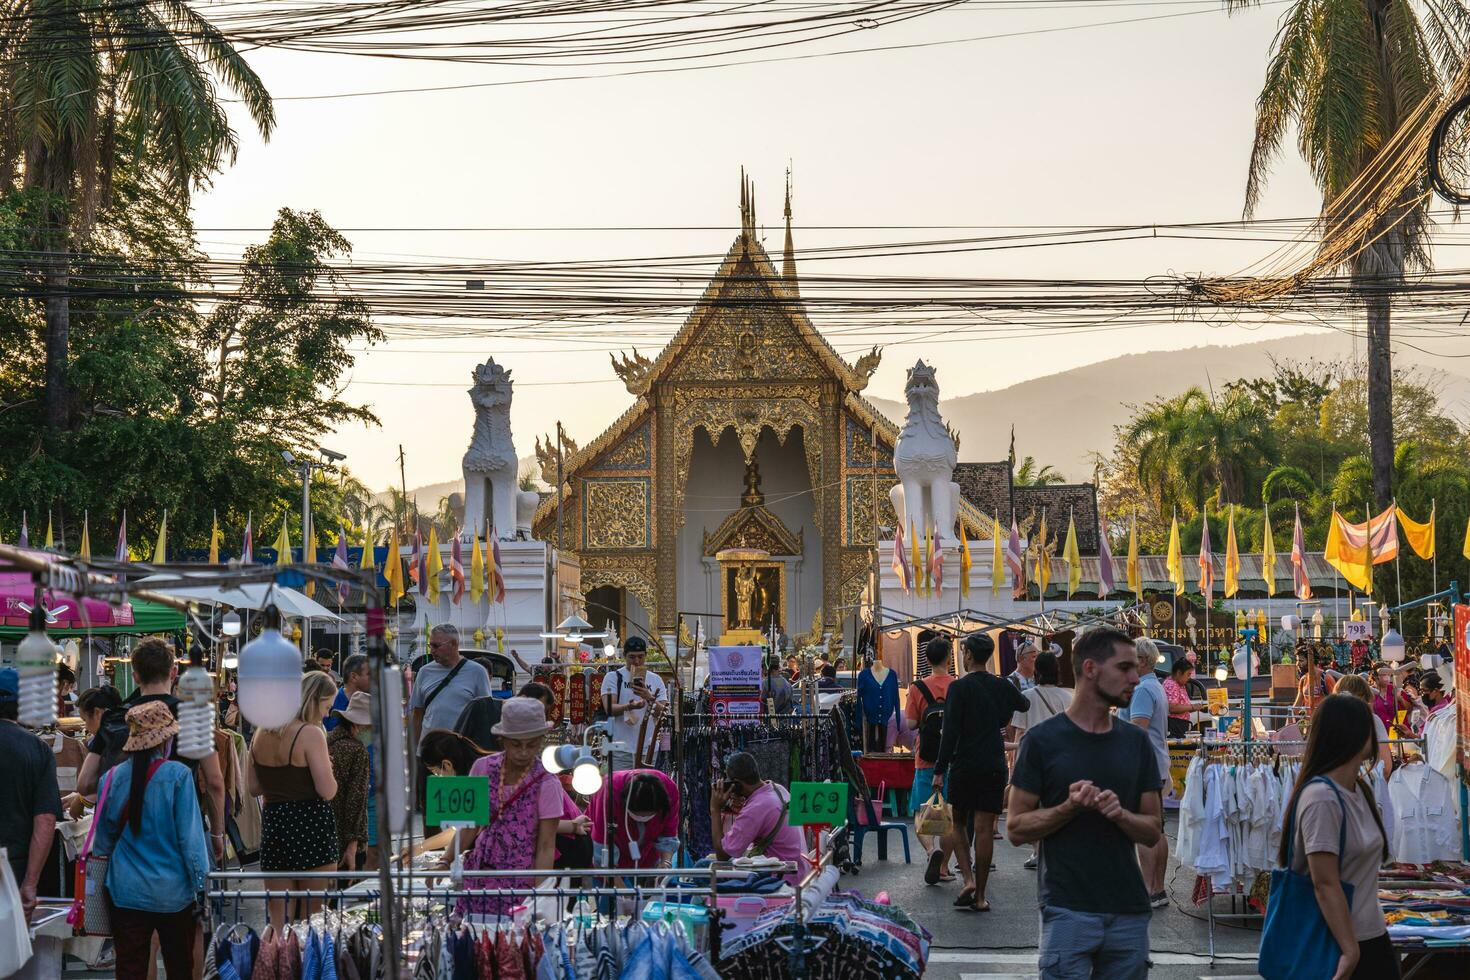 domingo caminando calle noche mercado, el más grande y mejor chiang mai noche mercado situado a eso fae caminando calle en chiang Mai, tailandia eso generalmente comienza alrededor 16:00 en domingo foto